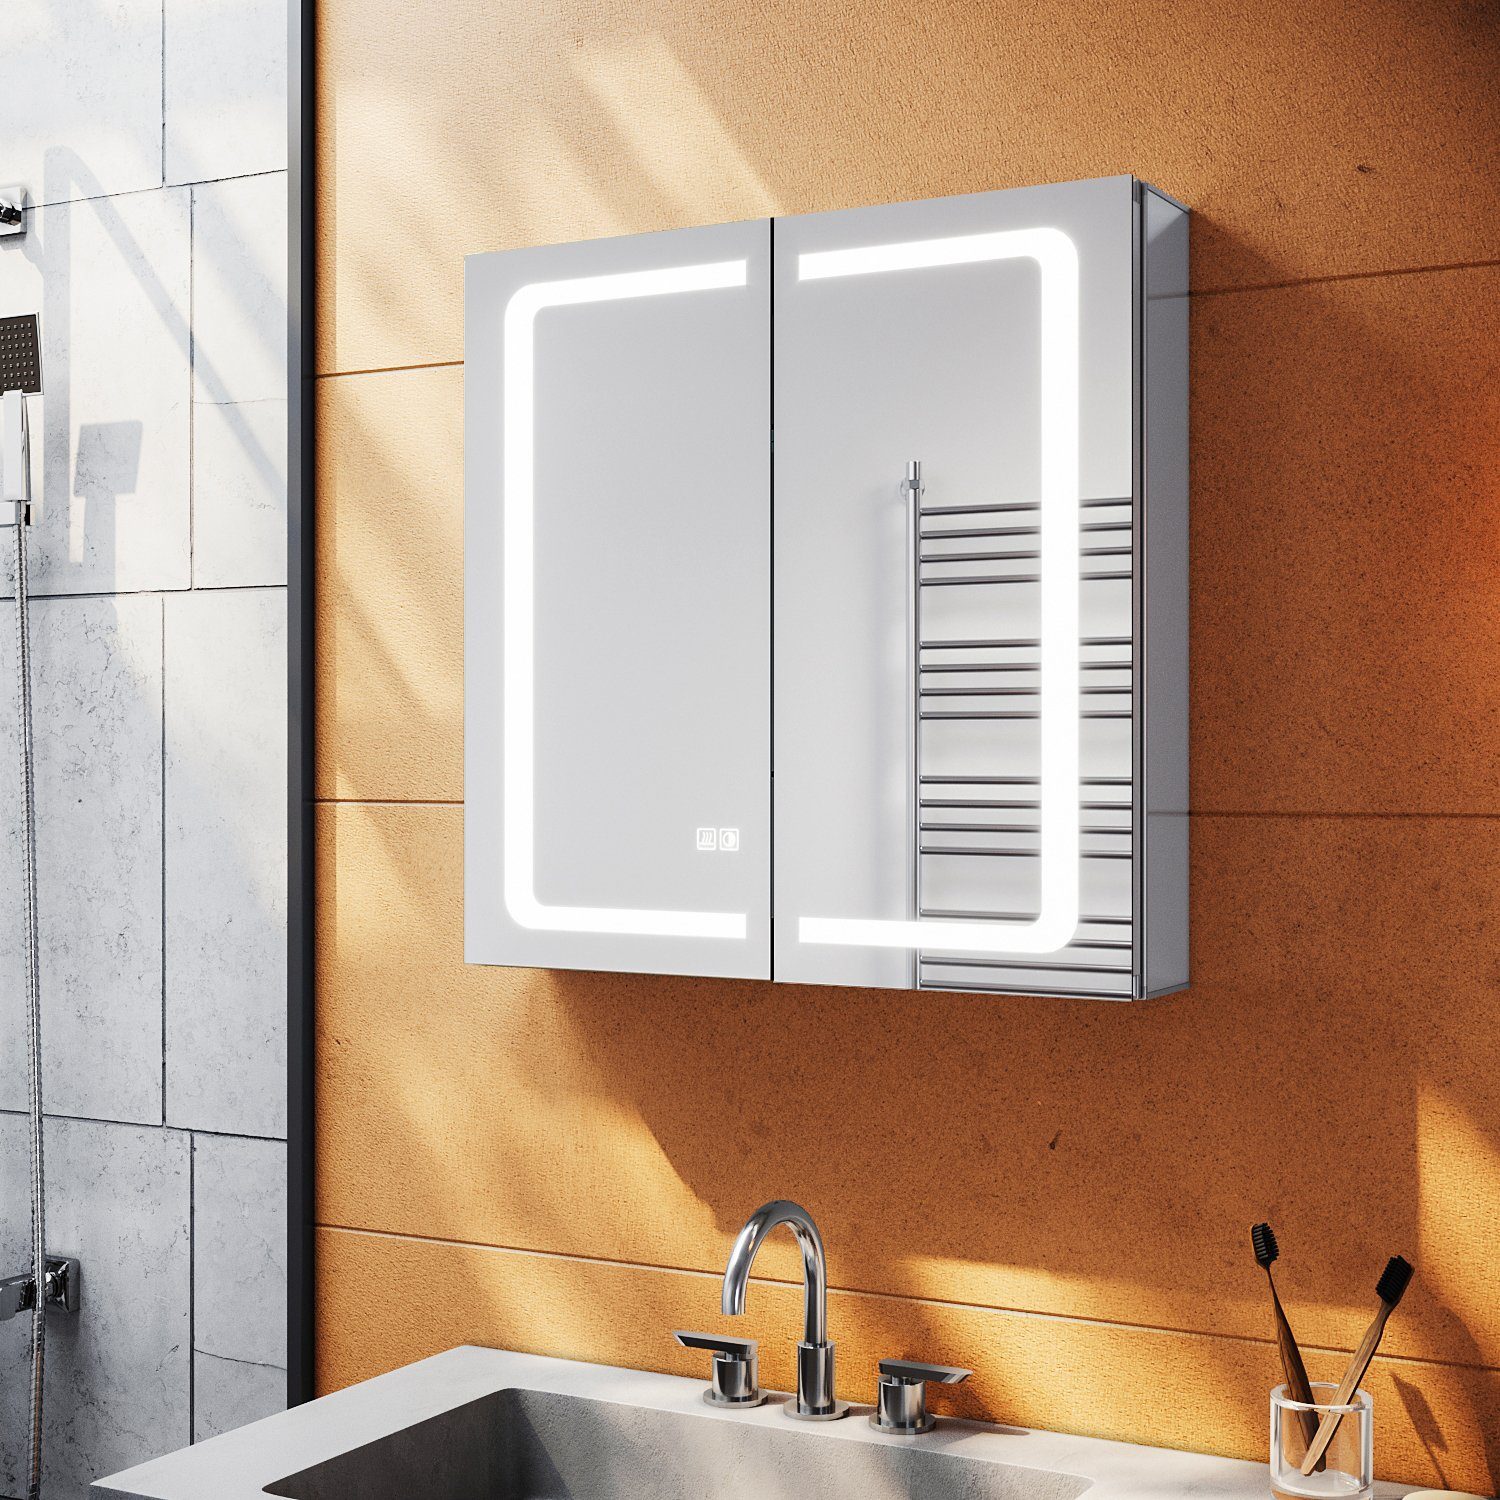 SONNI Spiegelschrank Spiegelschrank Bad mit Beleuchtung und Steckdose LED Beschlagfrei mit Touchschalter | Spiegelschränke